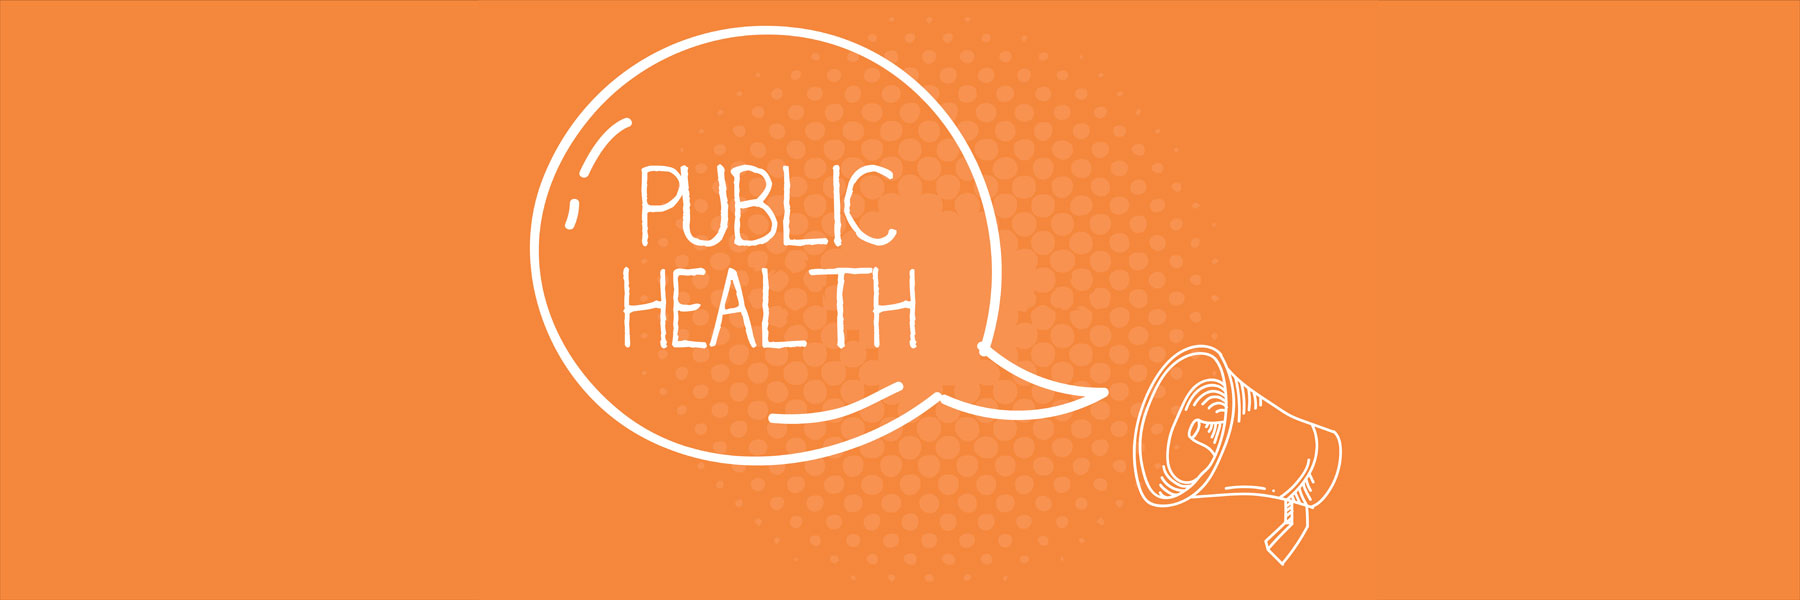 public health inside a comment bubble